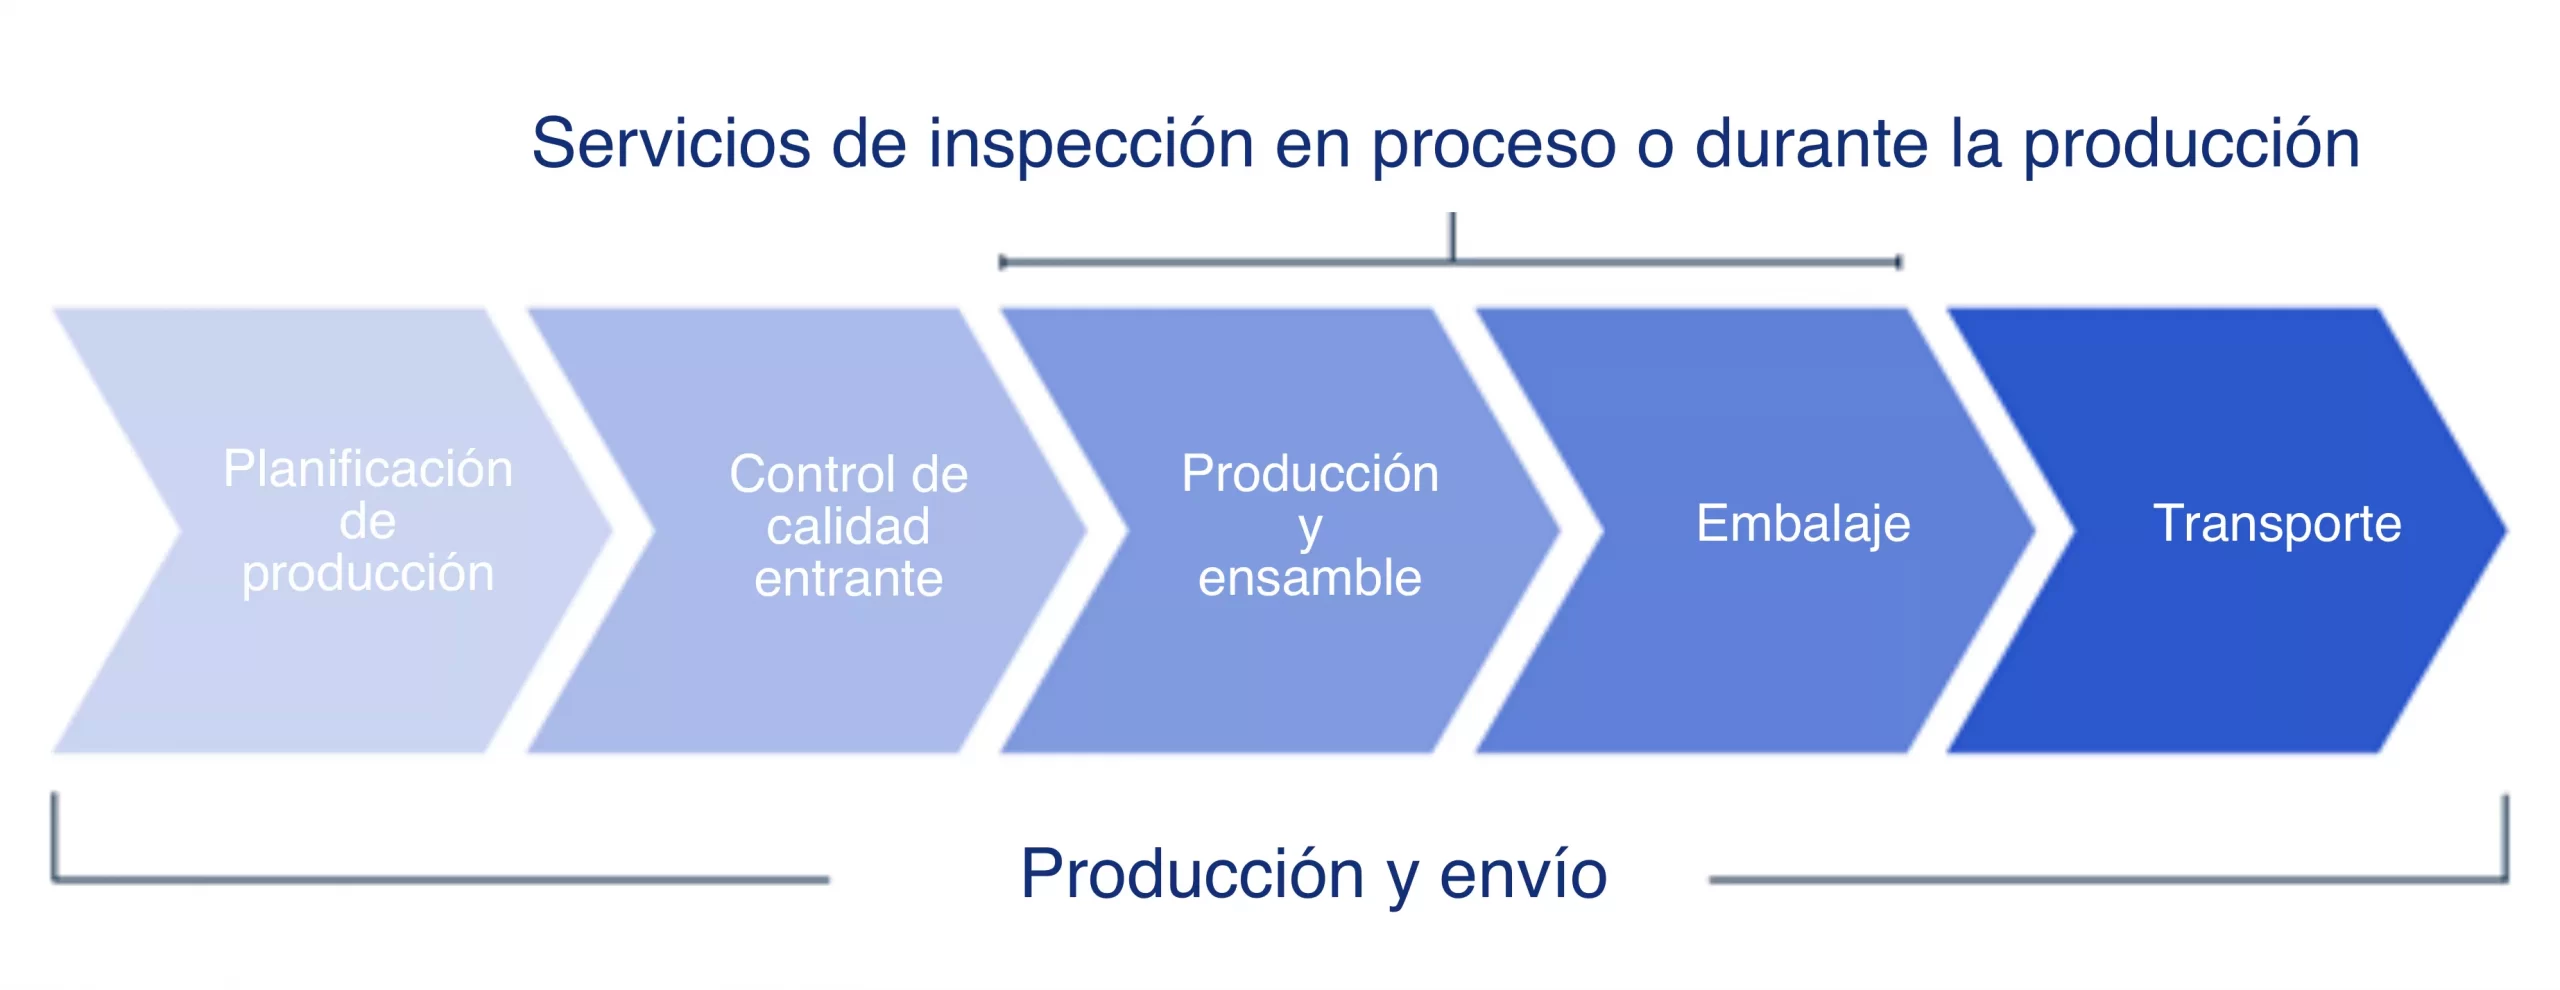 inspección en procesos de producción